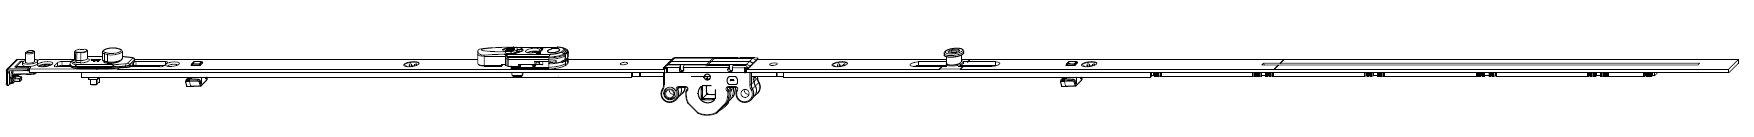 MAICO -  Cremonese MULTI-MATIC anta ribalta antieffrazione altezza maniglia fissa con piedino e dss per ribalta e bilanciere - gr / dim. 1590 - entrata 15 - alt. man. 600 - lbb/hbb 1341 - 1590